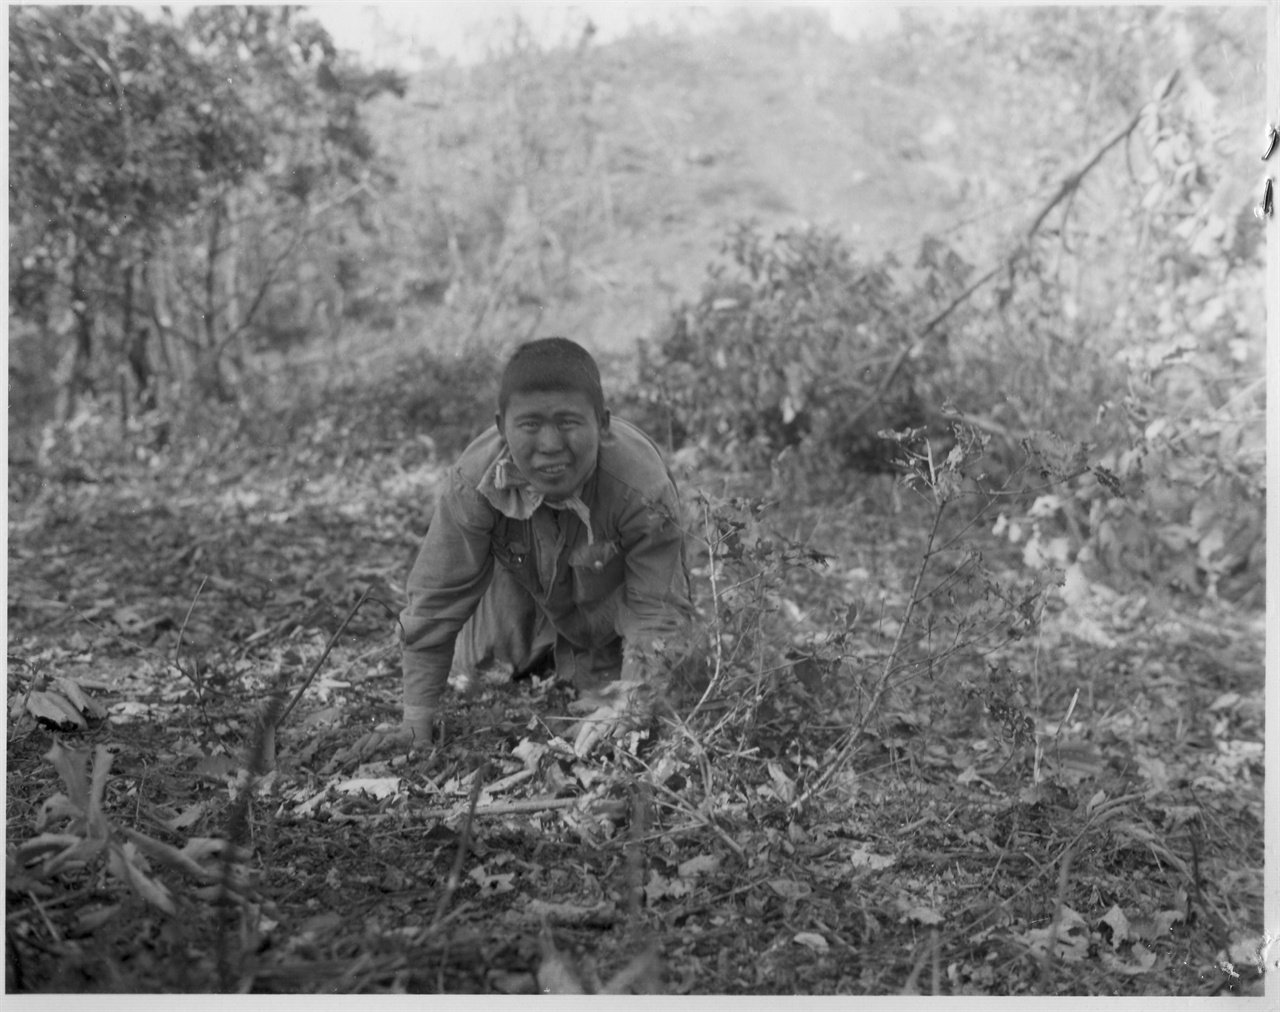  1951. 9. 20. 수풀 속에 숨어있던 한 인민군 병사가 총구 앞에서 짐승처럼 기어 나오면서 투항하고 있다.